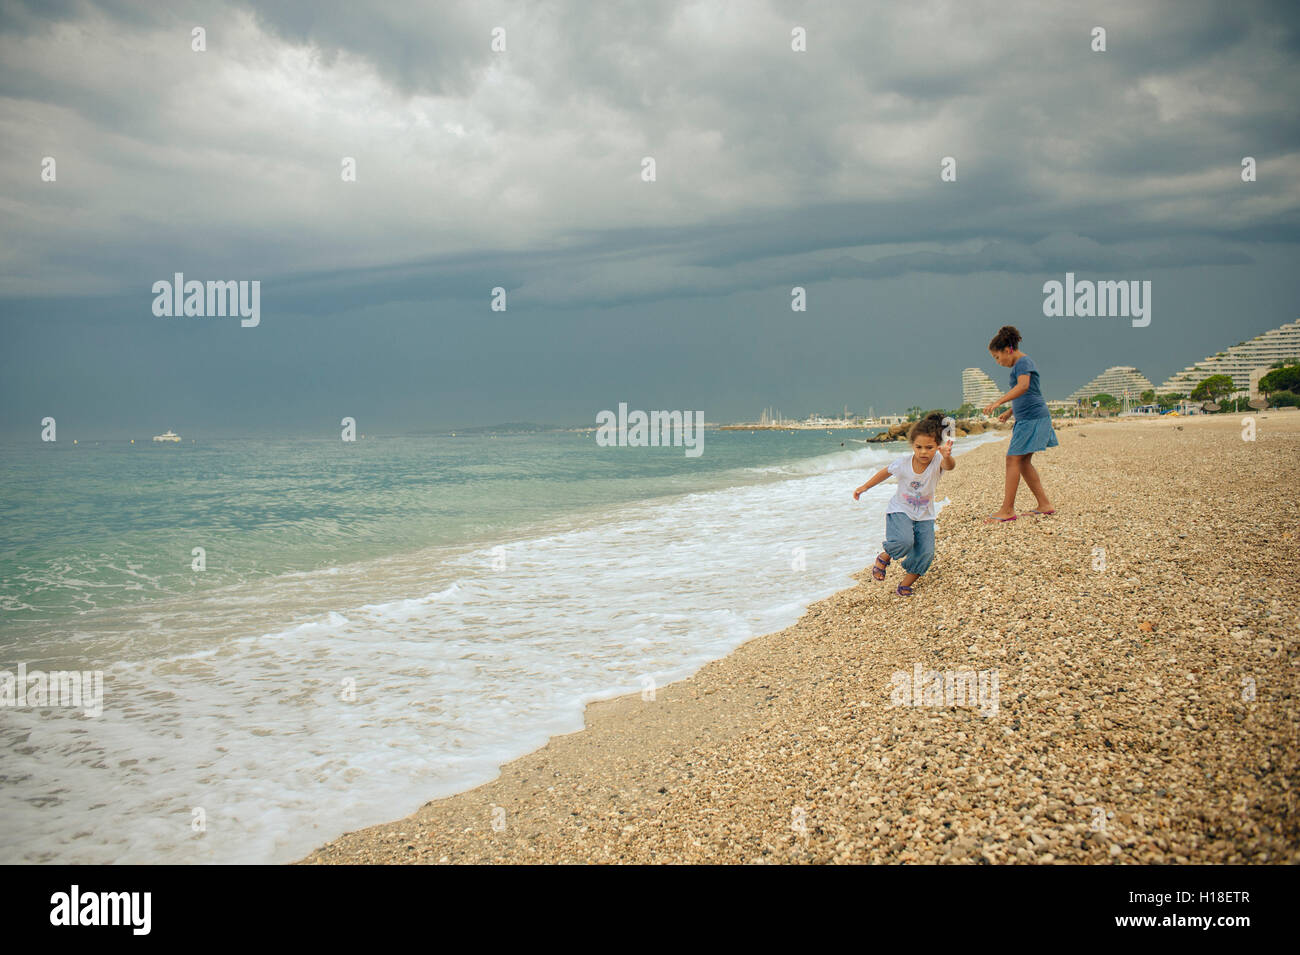 Stock Foto von 2 Schwestern, die spielen am Strand, Villeneuve Loubet, Frankreich Stockfoto